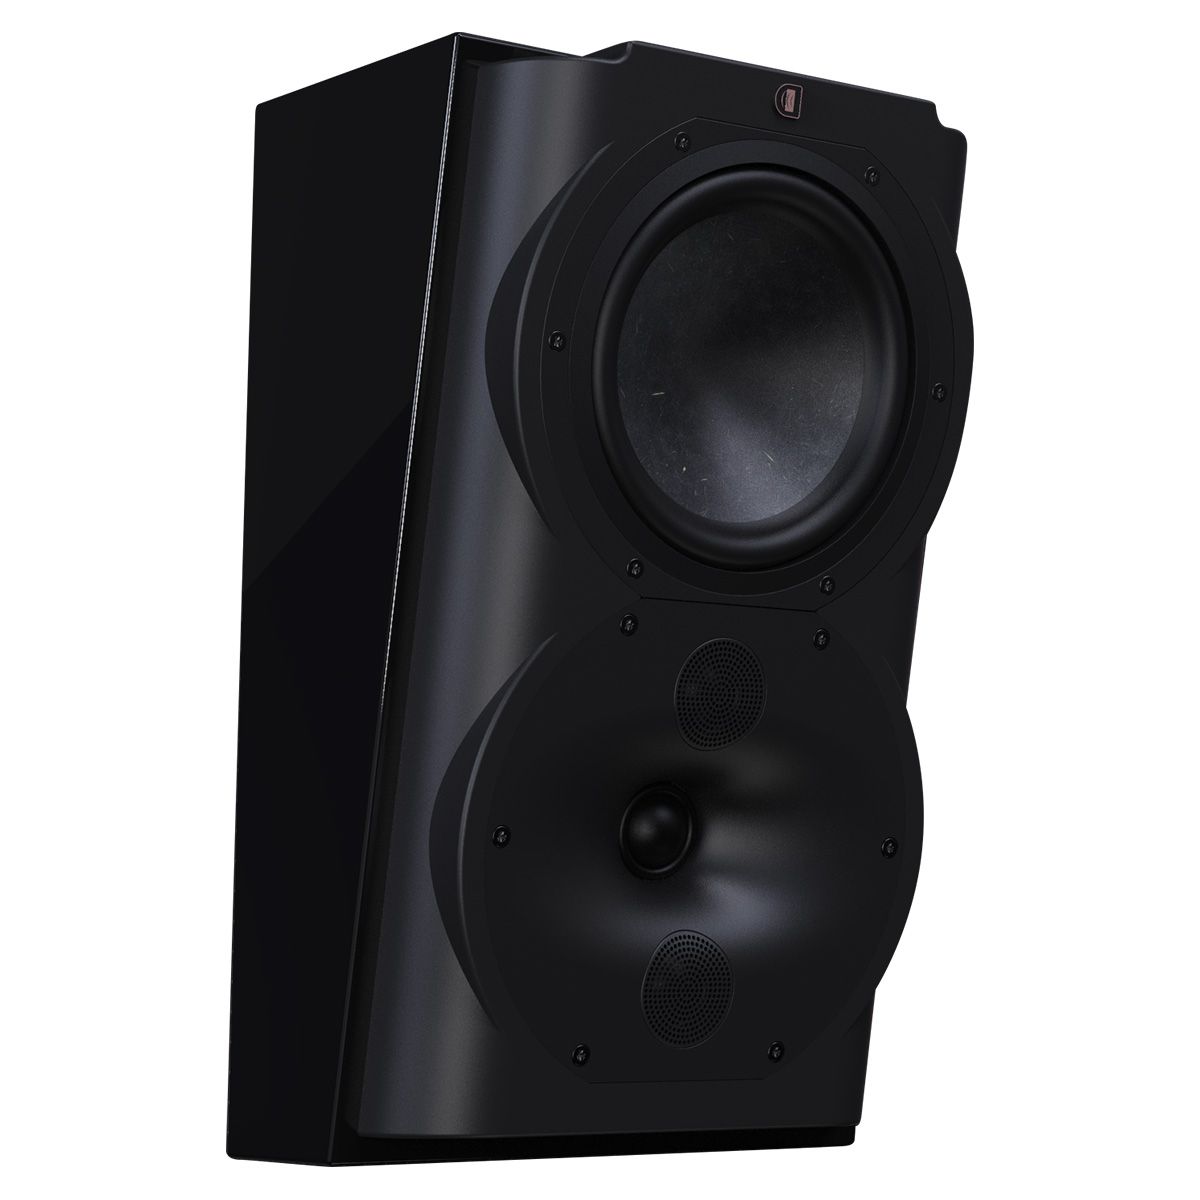 Perlisten R4s Surround Speaker - Each